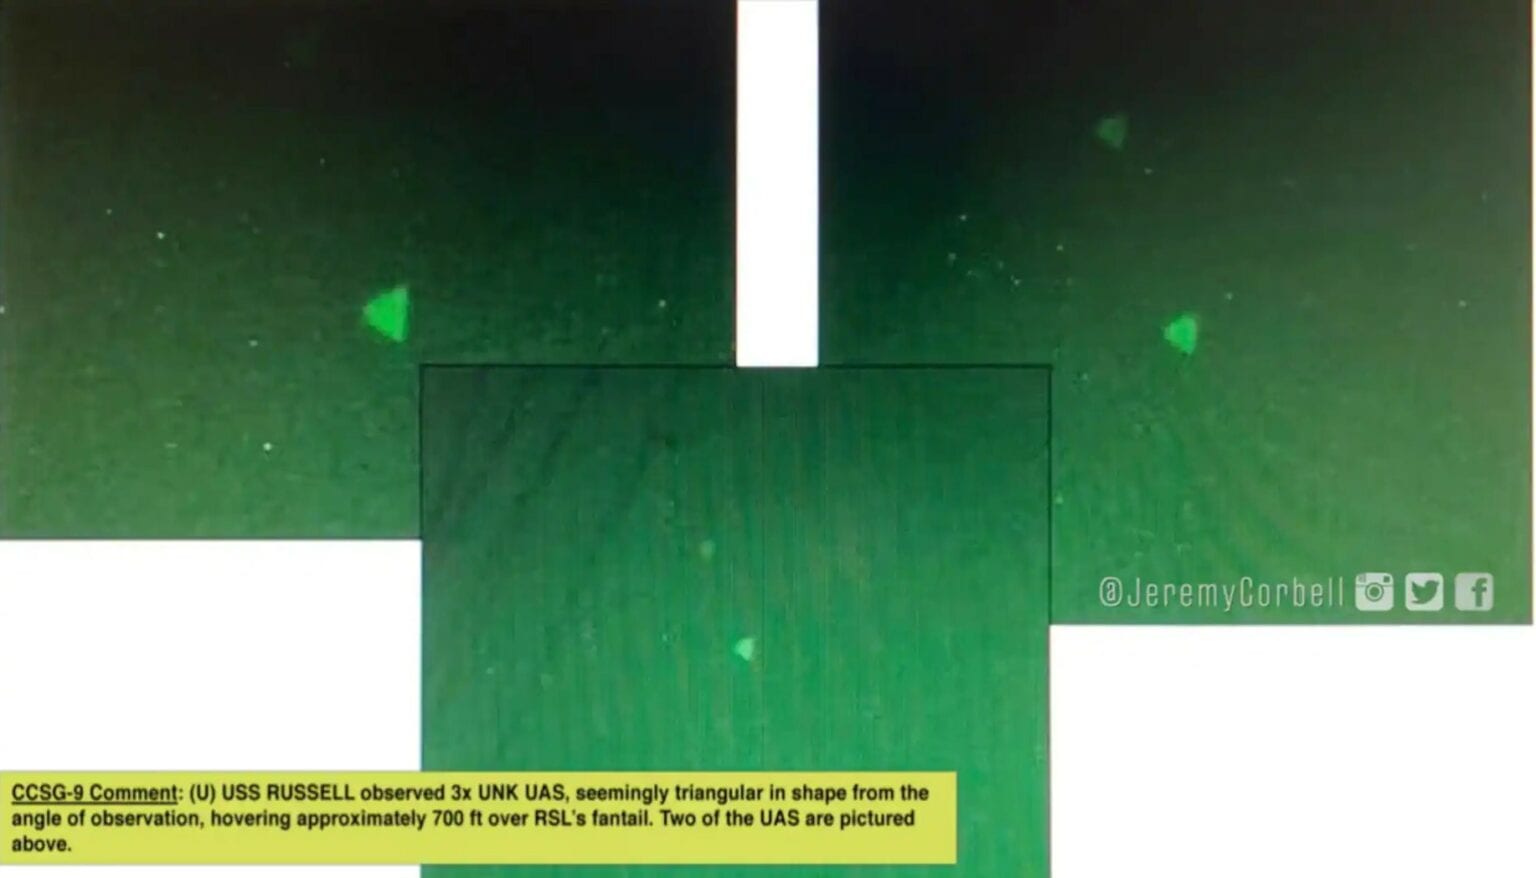 El documentalista Jeremy Corbell publicó en redes un video de visión nocturna captado por un destructor de la Armada de Estados Unidos en la que aparece un objetos volador, ovni, misterioso cerca de buques de guerra.